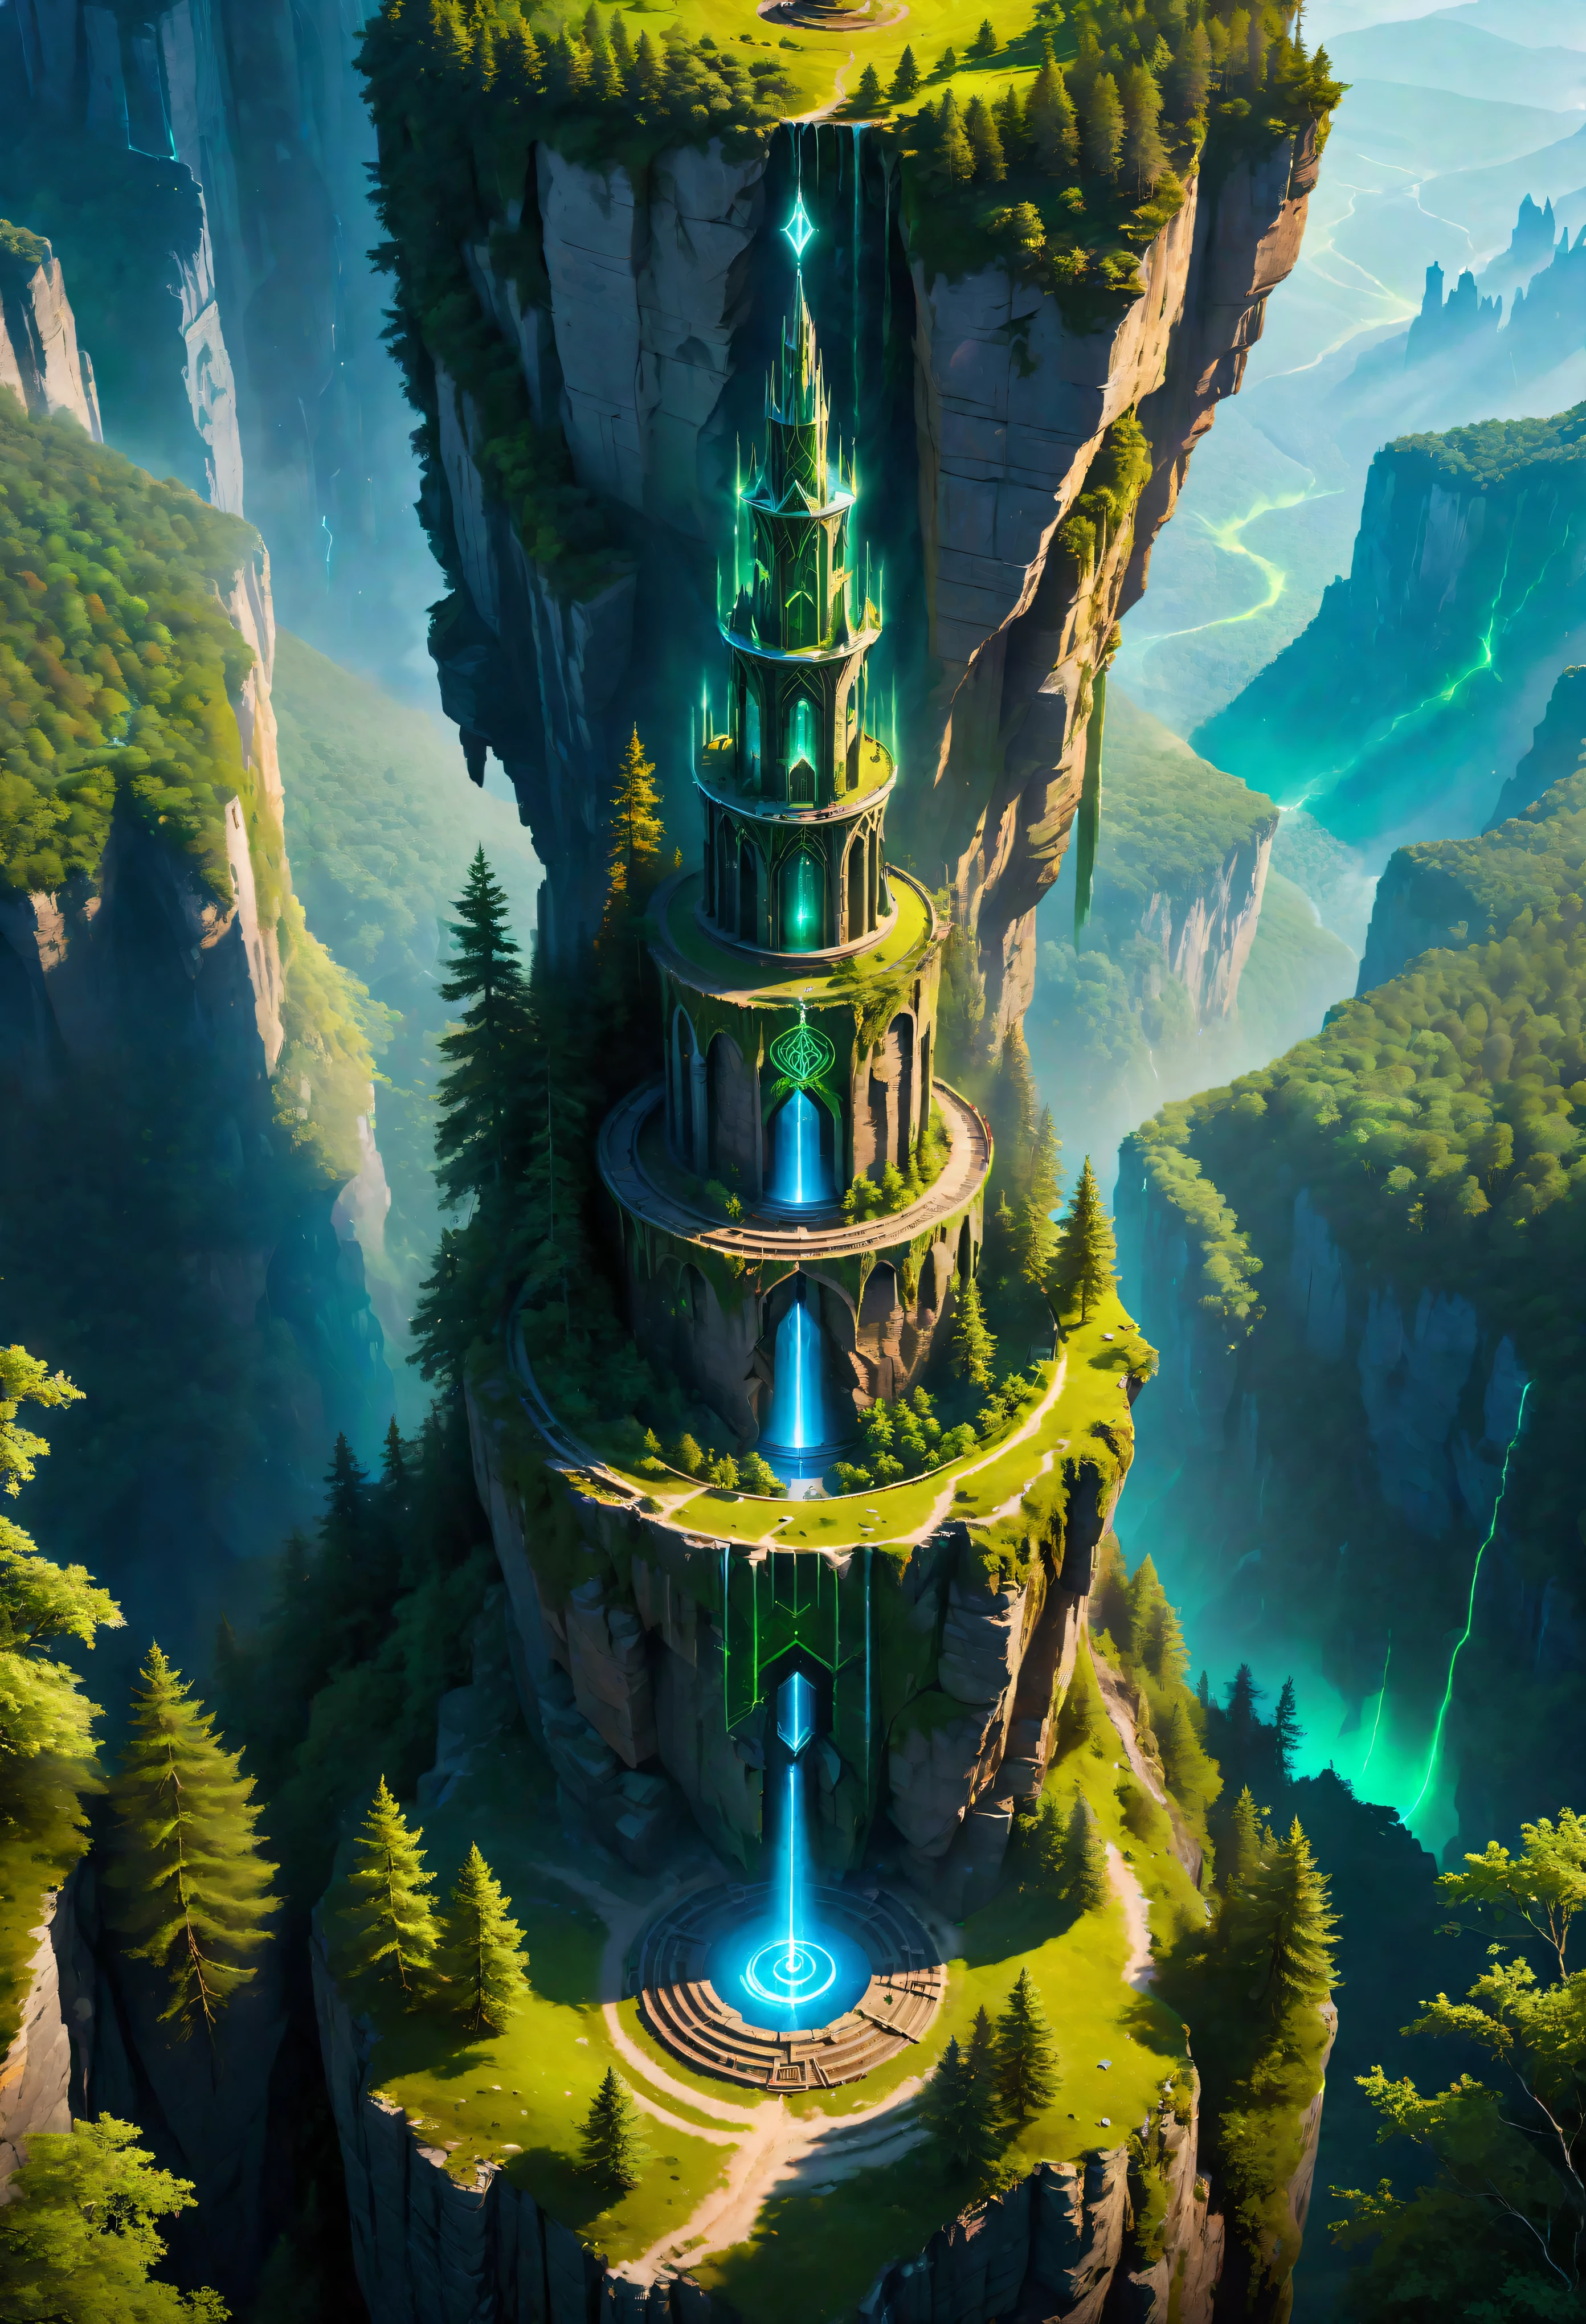 มุมมองทางอากาศ of Towering steep and towering high เมจิกทาวเวอร์ in a cliff, ป่า, หุบเขาหน้าผาวงกลมเวทย์มนตร์ไม่สมมาตร, ((มุมมองทางอากาศ):1.2), (อักษรรูนที่เร่าร้อน), (สัญลักษณ์เรืองแสง), อยู่ร่วมกับสภาพแวดล้อมทางธรรมชาติ, หอคอยวงกลมเวทย์มนตร์, lush colorful ป่า, ภูมิทัศน์ที่สวยงาม, เมจิกทาวเวอร์, มีรายละเอียดมาก, คุณภาพดีที่สุด, ผลงานชิ้นเอก, ความละเอียดสูง, เกินจริง, 8k, มุมมองด้านบน,  มุมมองมุมสูง, จานสีสีฟ้า, ความเรียบง่าย.